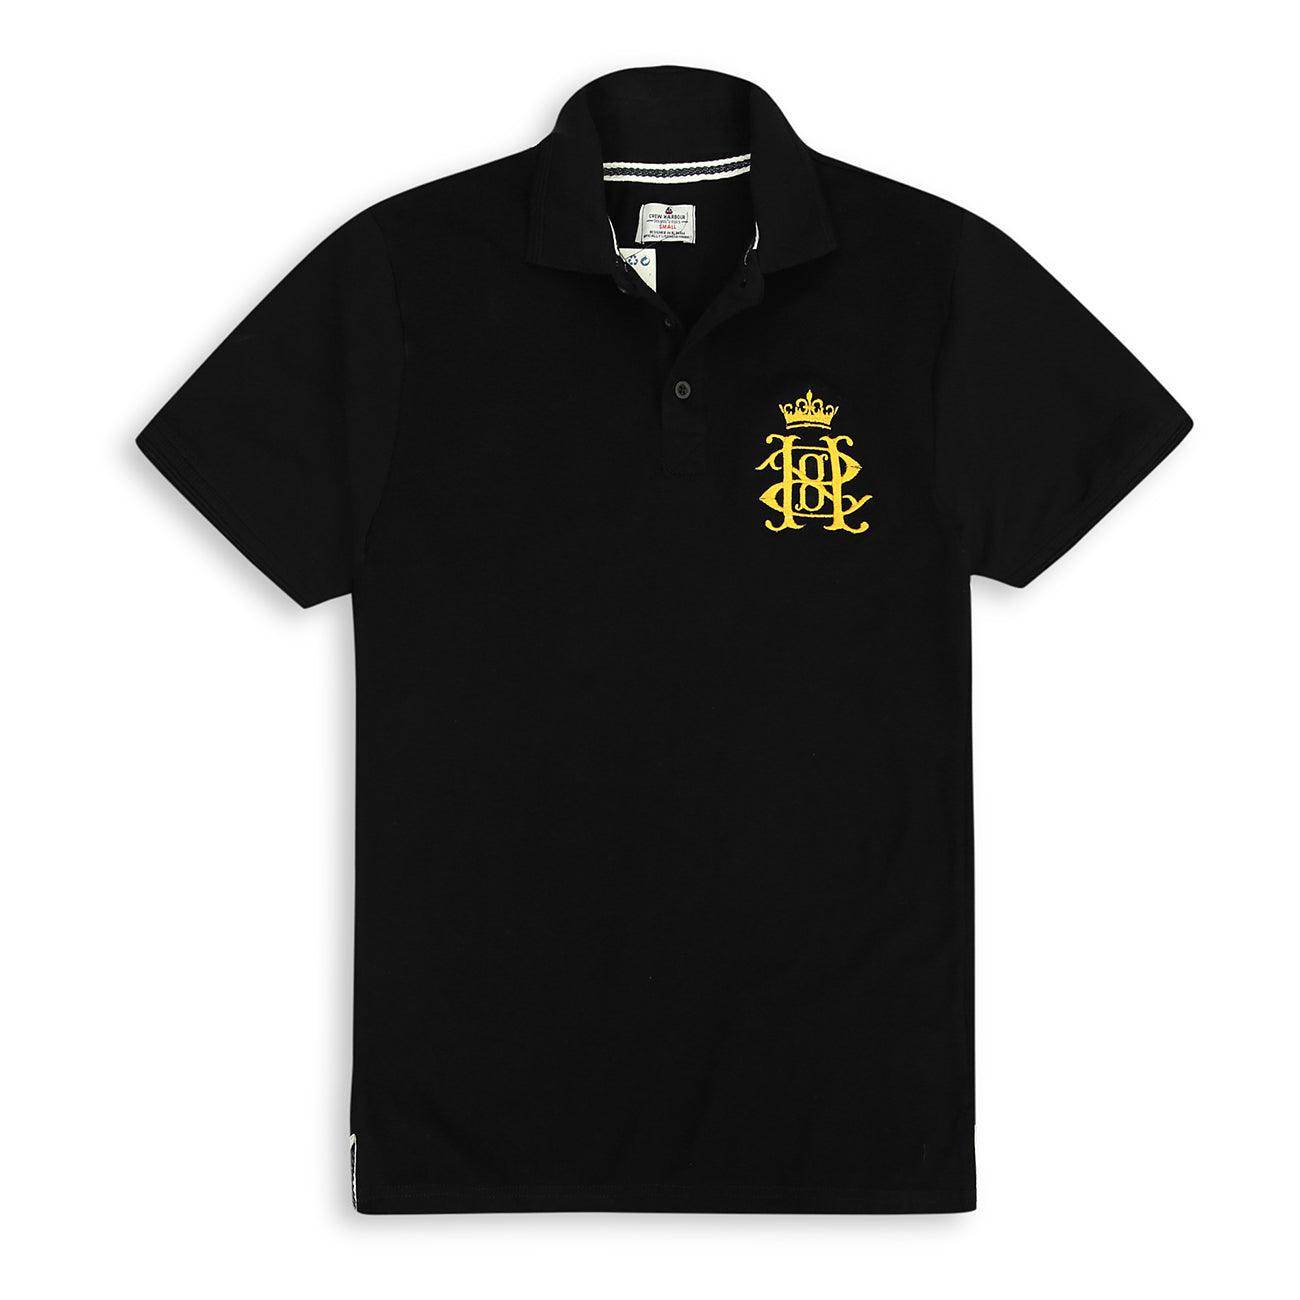 Mens Premium Quality Black Slim Fit Signature Pique Polo Shirt (CR-11250) - Brands River